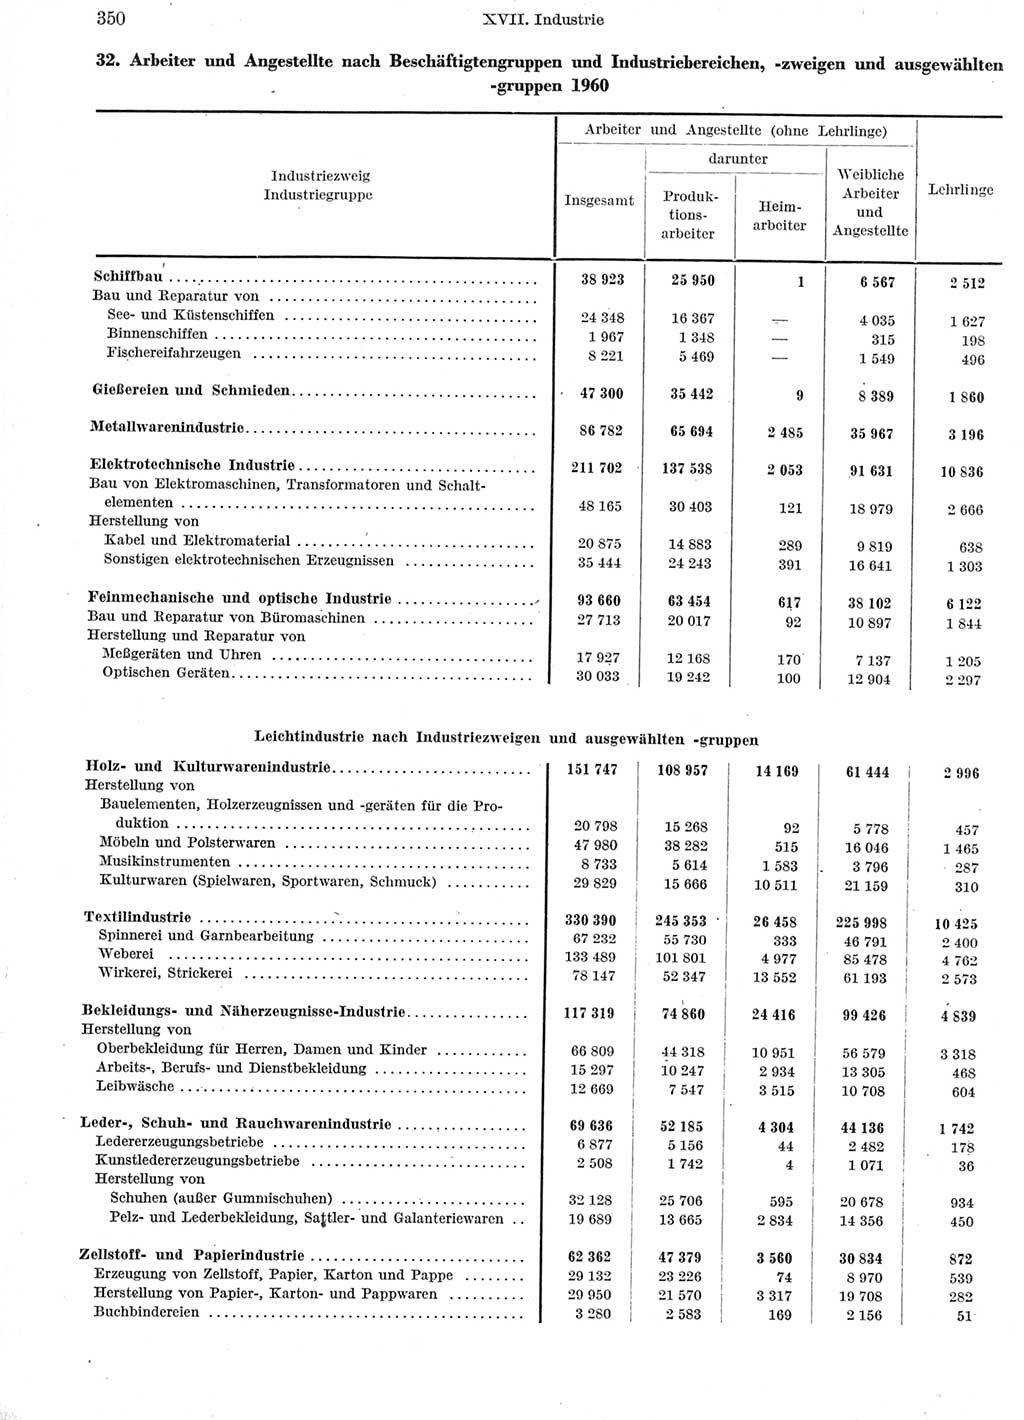 Statistisches Jahrbuch der Deutschen Demokratischen Republik (DDR) 1960-1961, Seite 350 (Stat. Jb. DDR 1960-1961, S. 350)